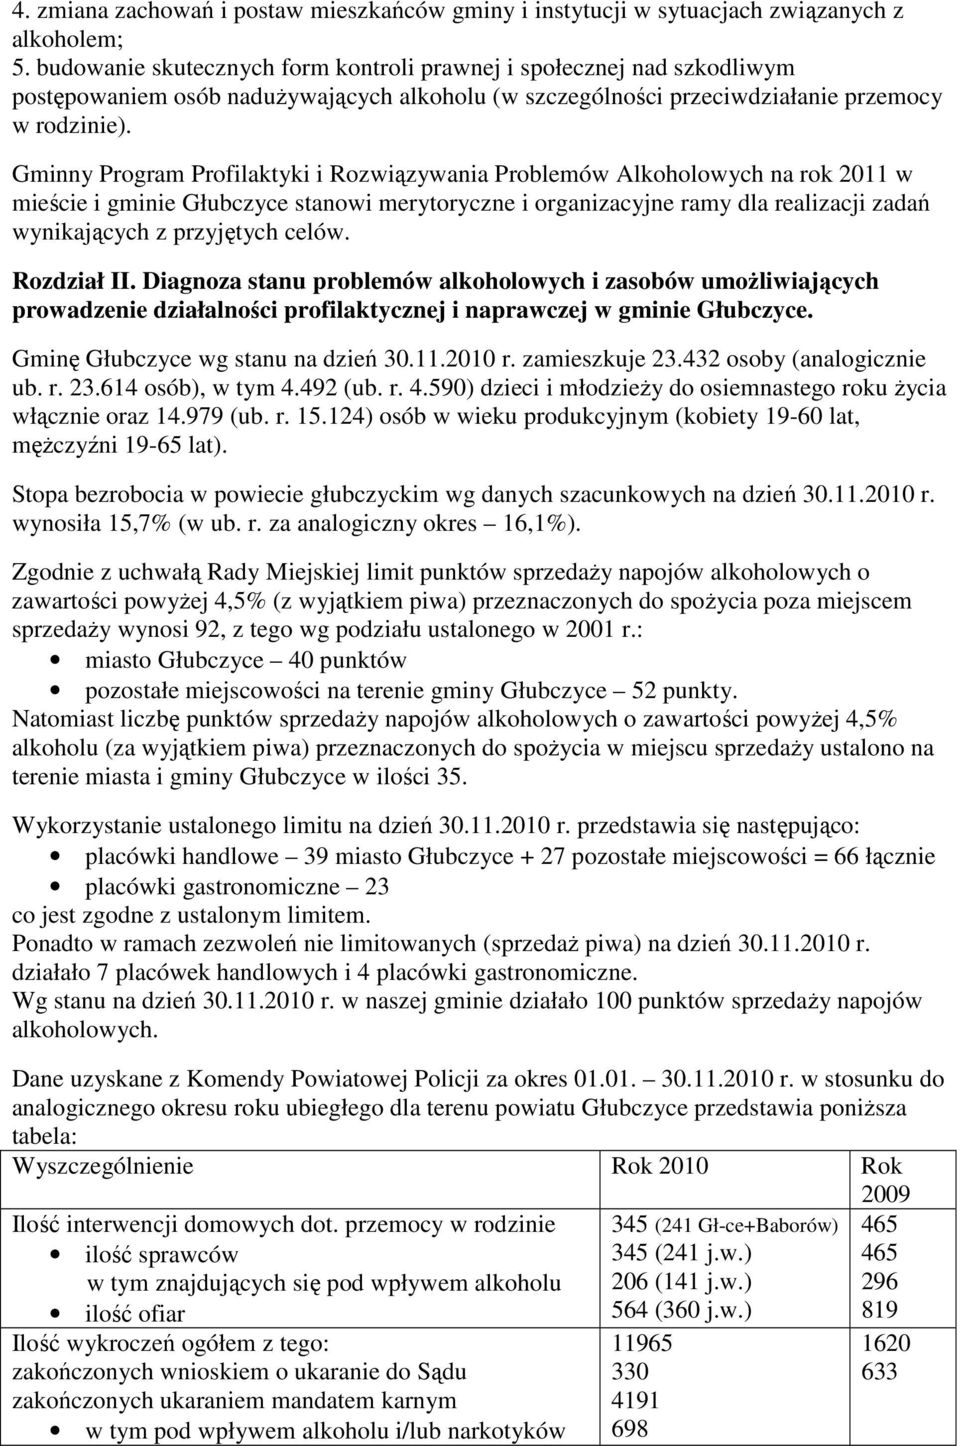 Gminny Program Profilaktyki i Rozwiązywania Problemów Alkoholowych na rok 2011 w mieście i gminie Głubczyce stanowi merytoryczne i organizacyjne ramy dla realizacji zadań wynikających z przyjętych